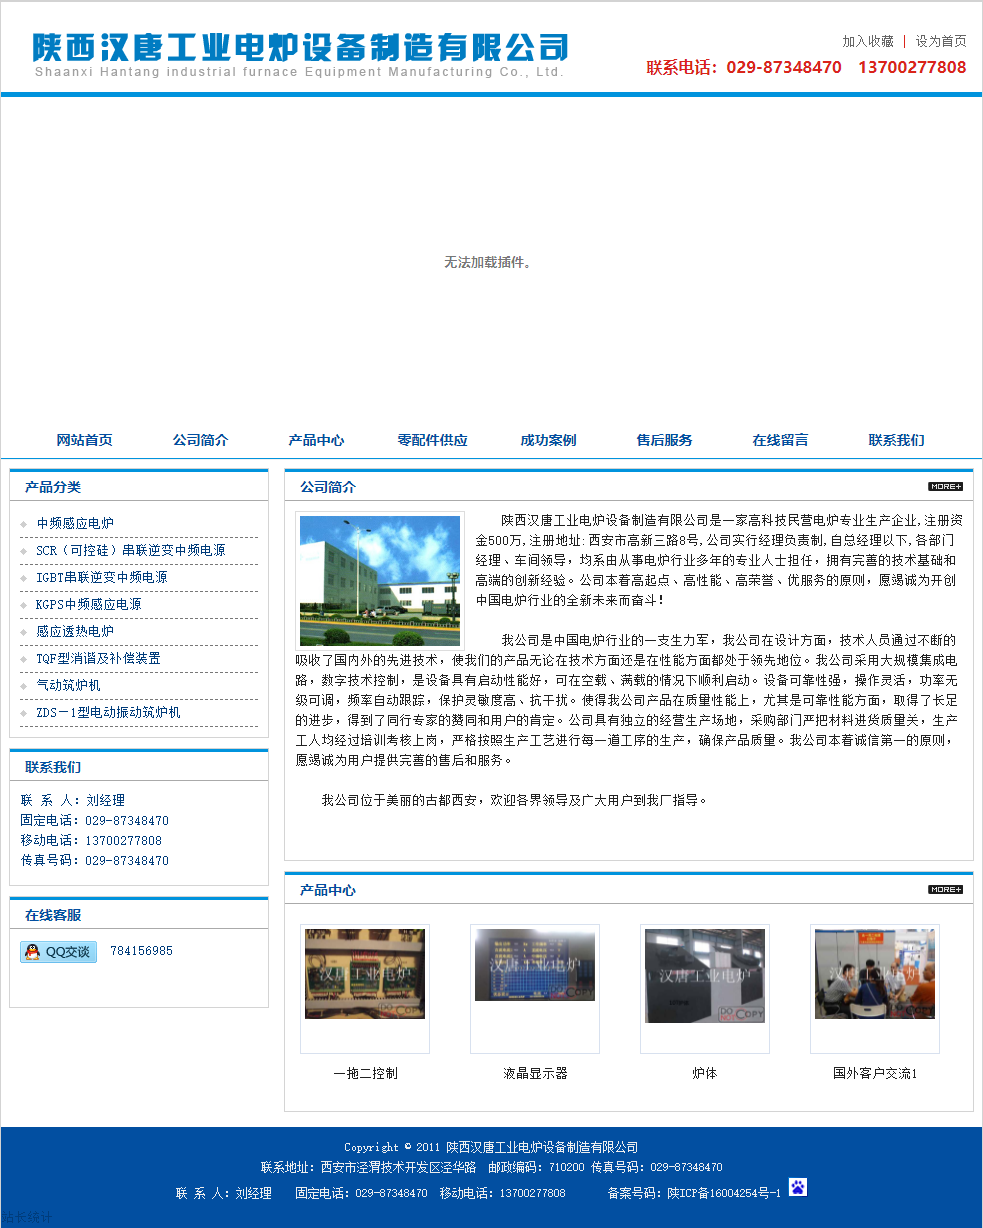 陕西汉唐工业电炉设备制造有限公司网站案例